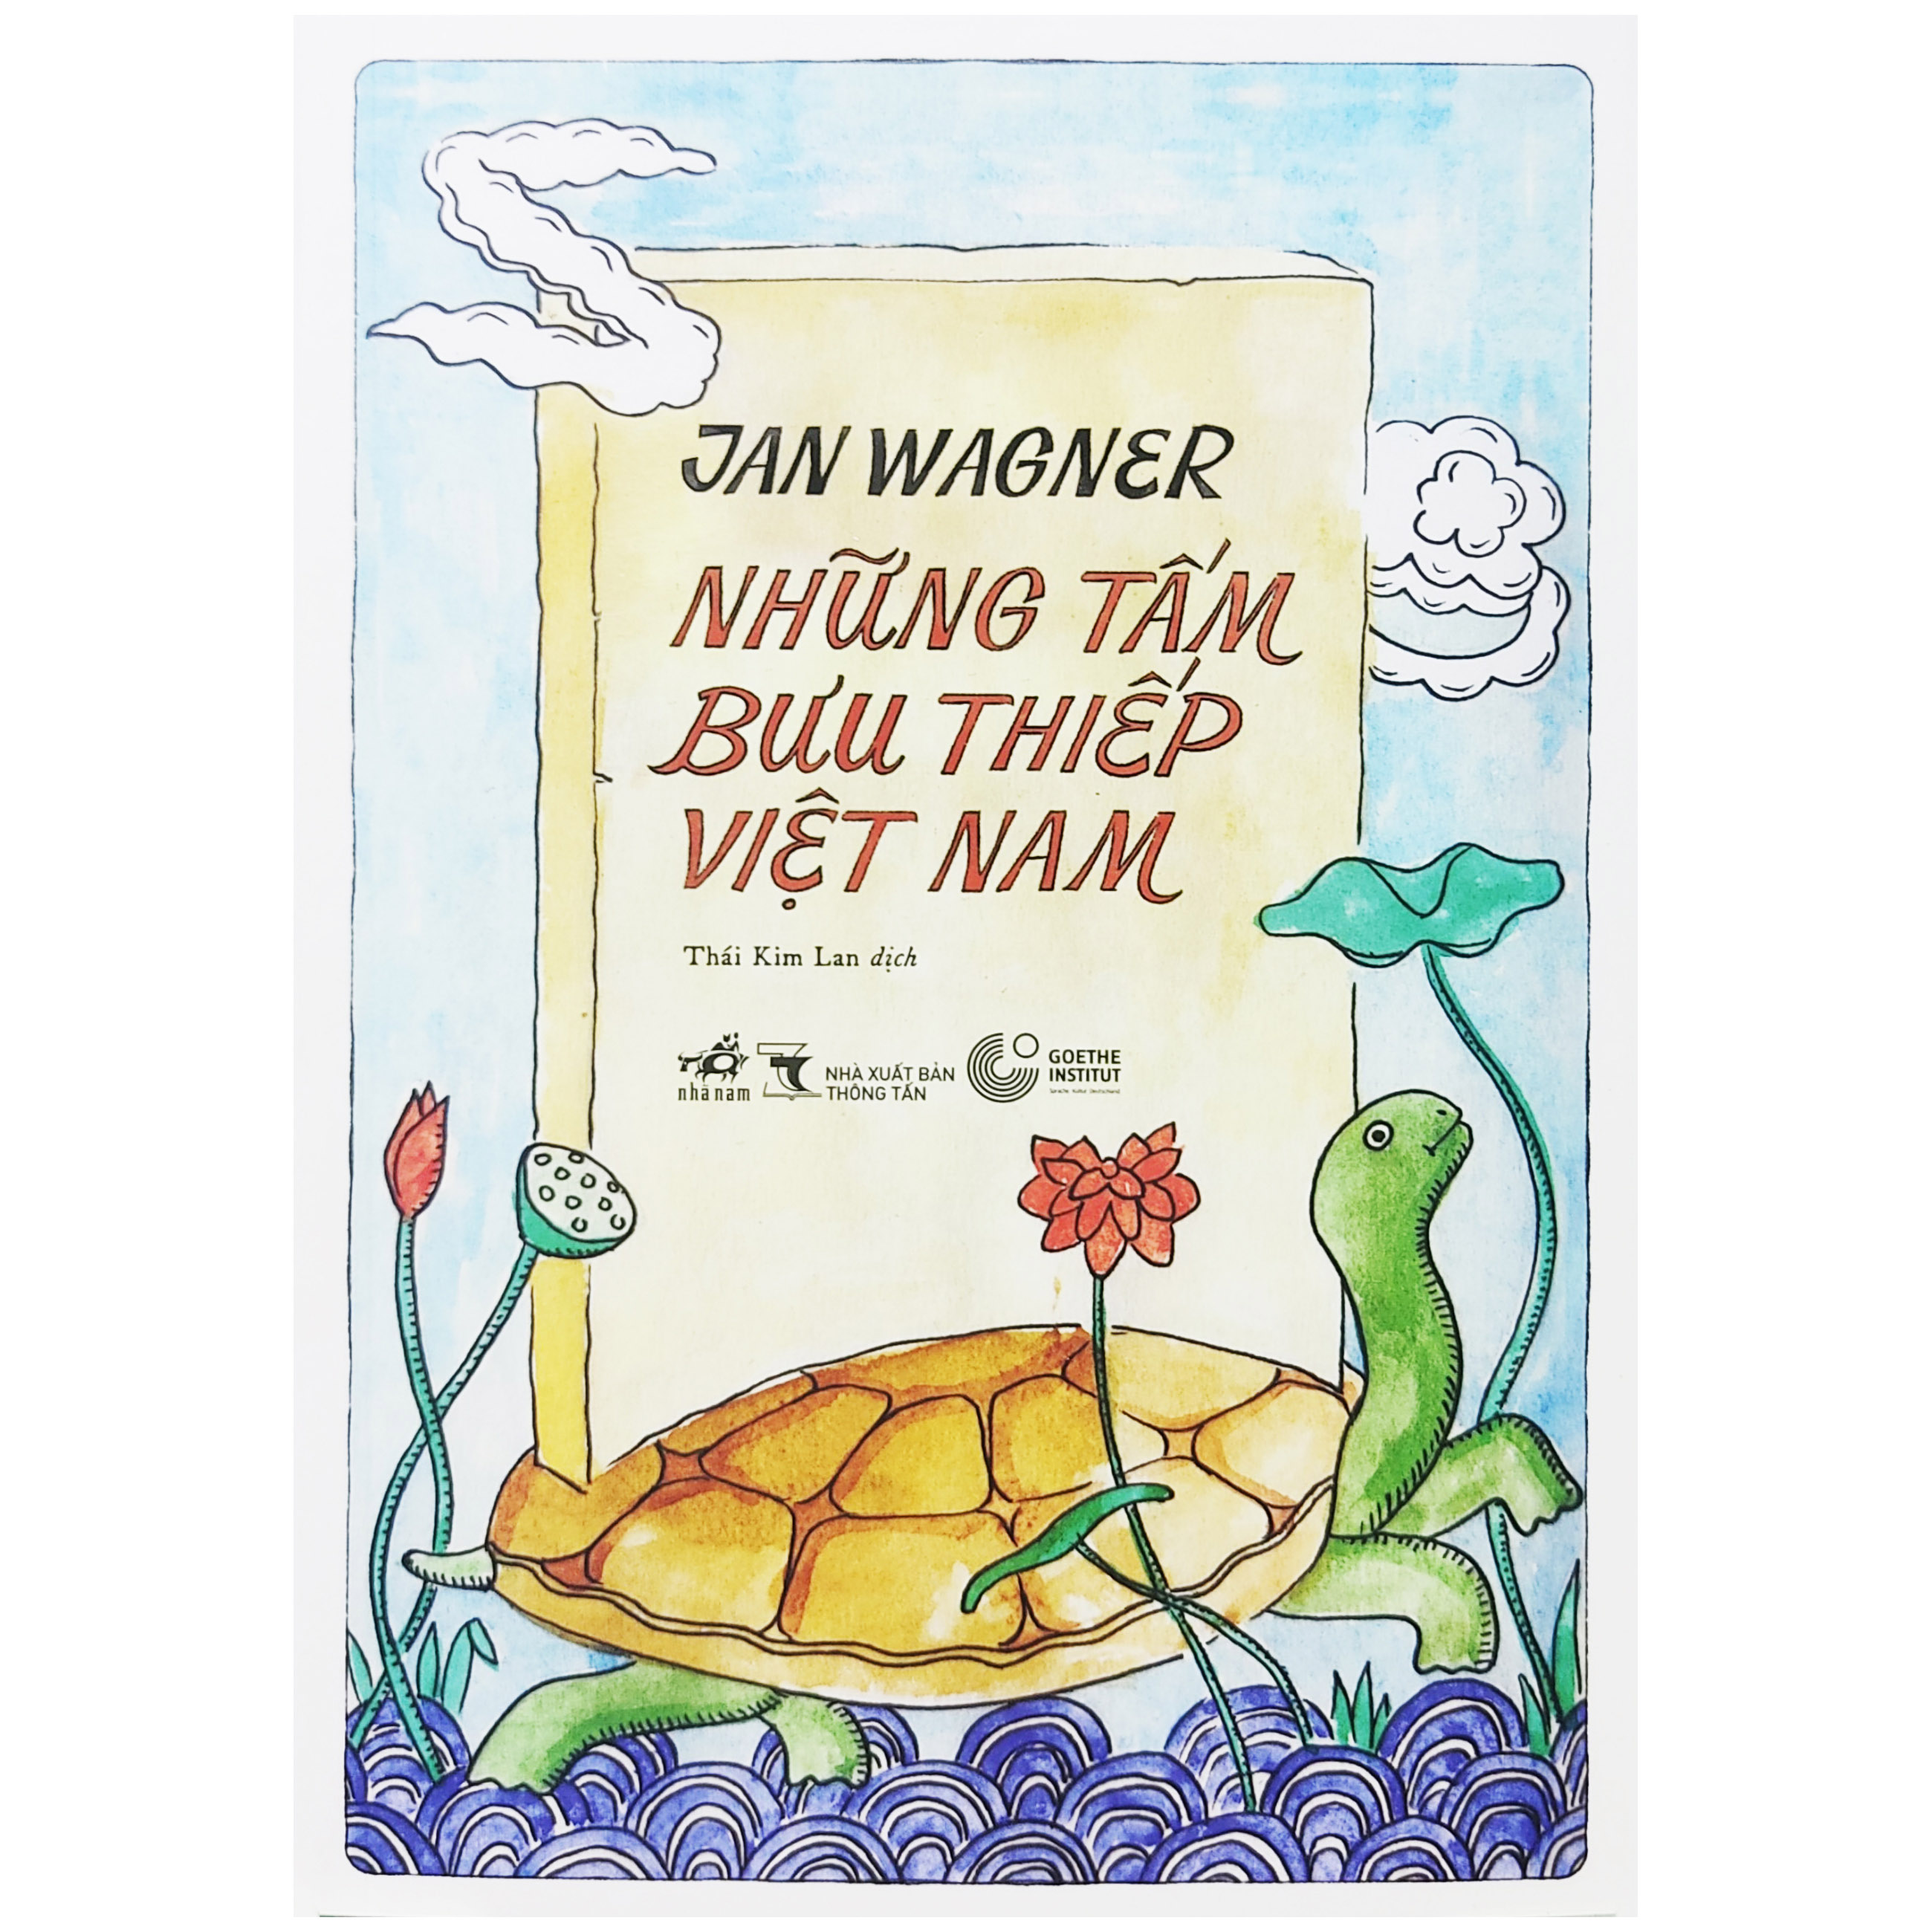 Sách - Những tấm bưu thiếp Việt Nam - Tác giả Jan Wagner (Nhã Nam)